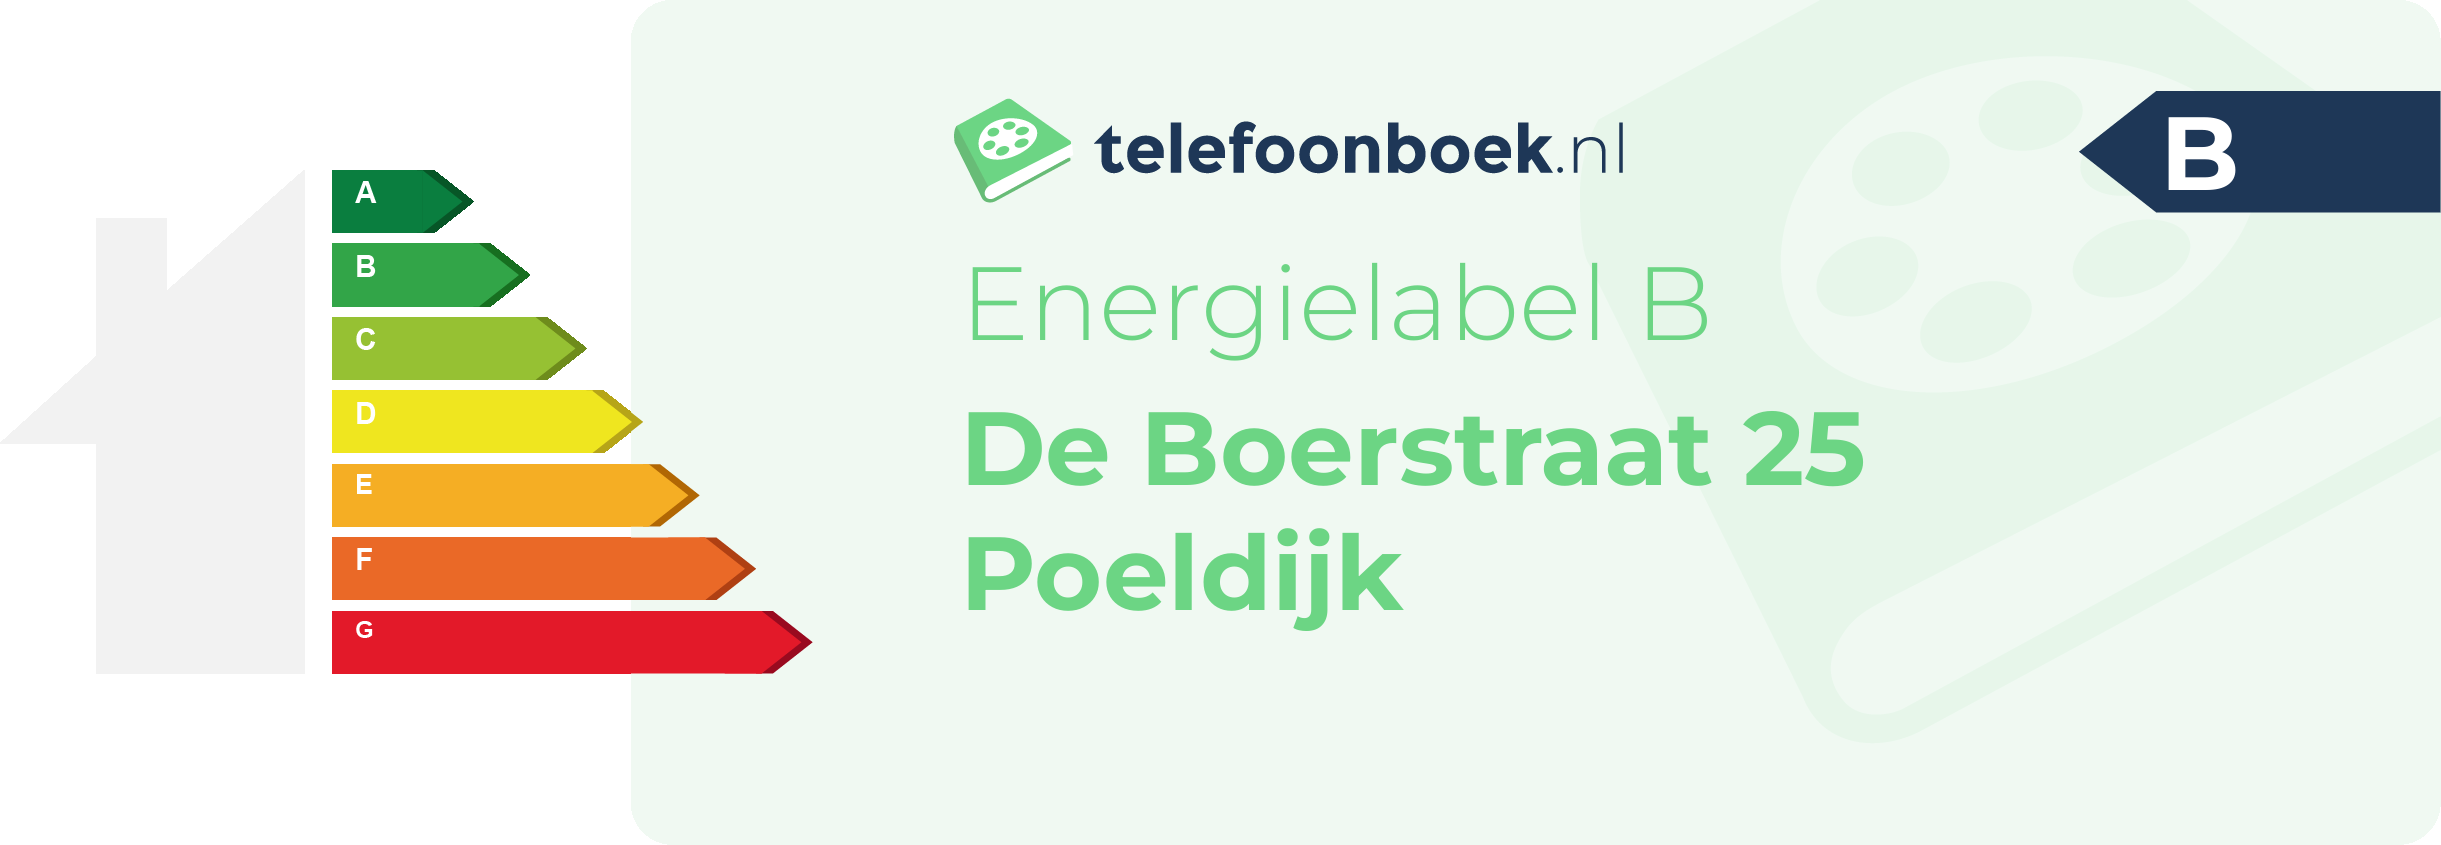 Energielabel De Boerstraat 25 Poeldijk